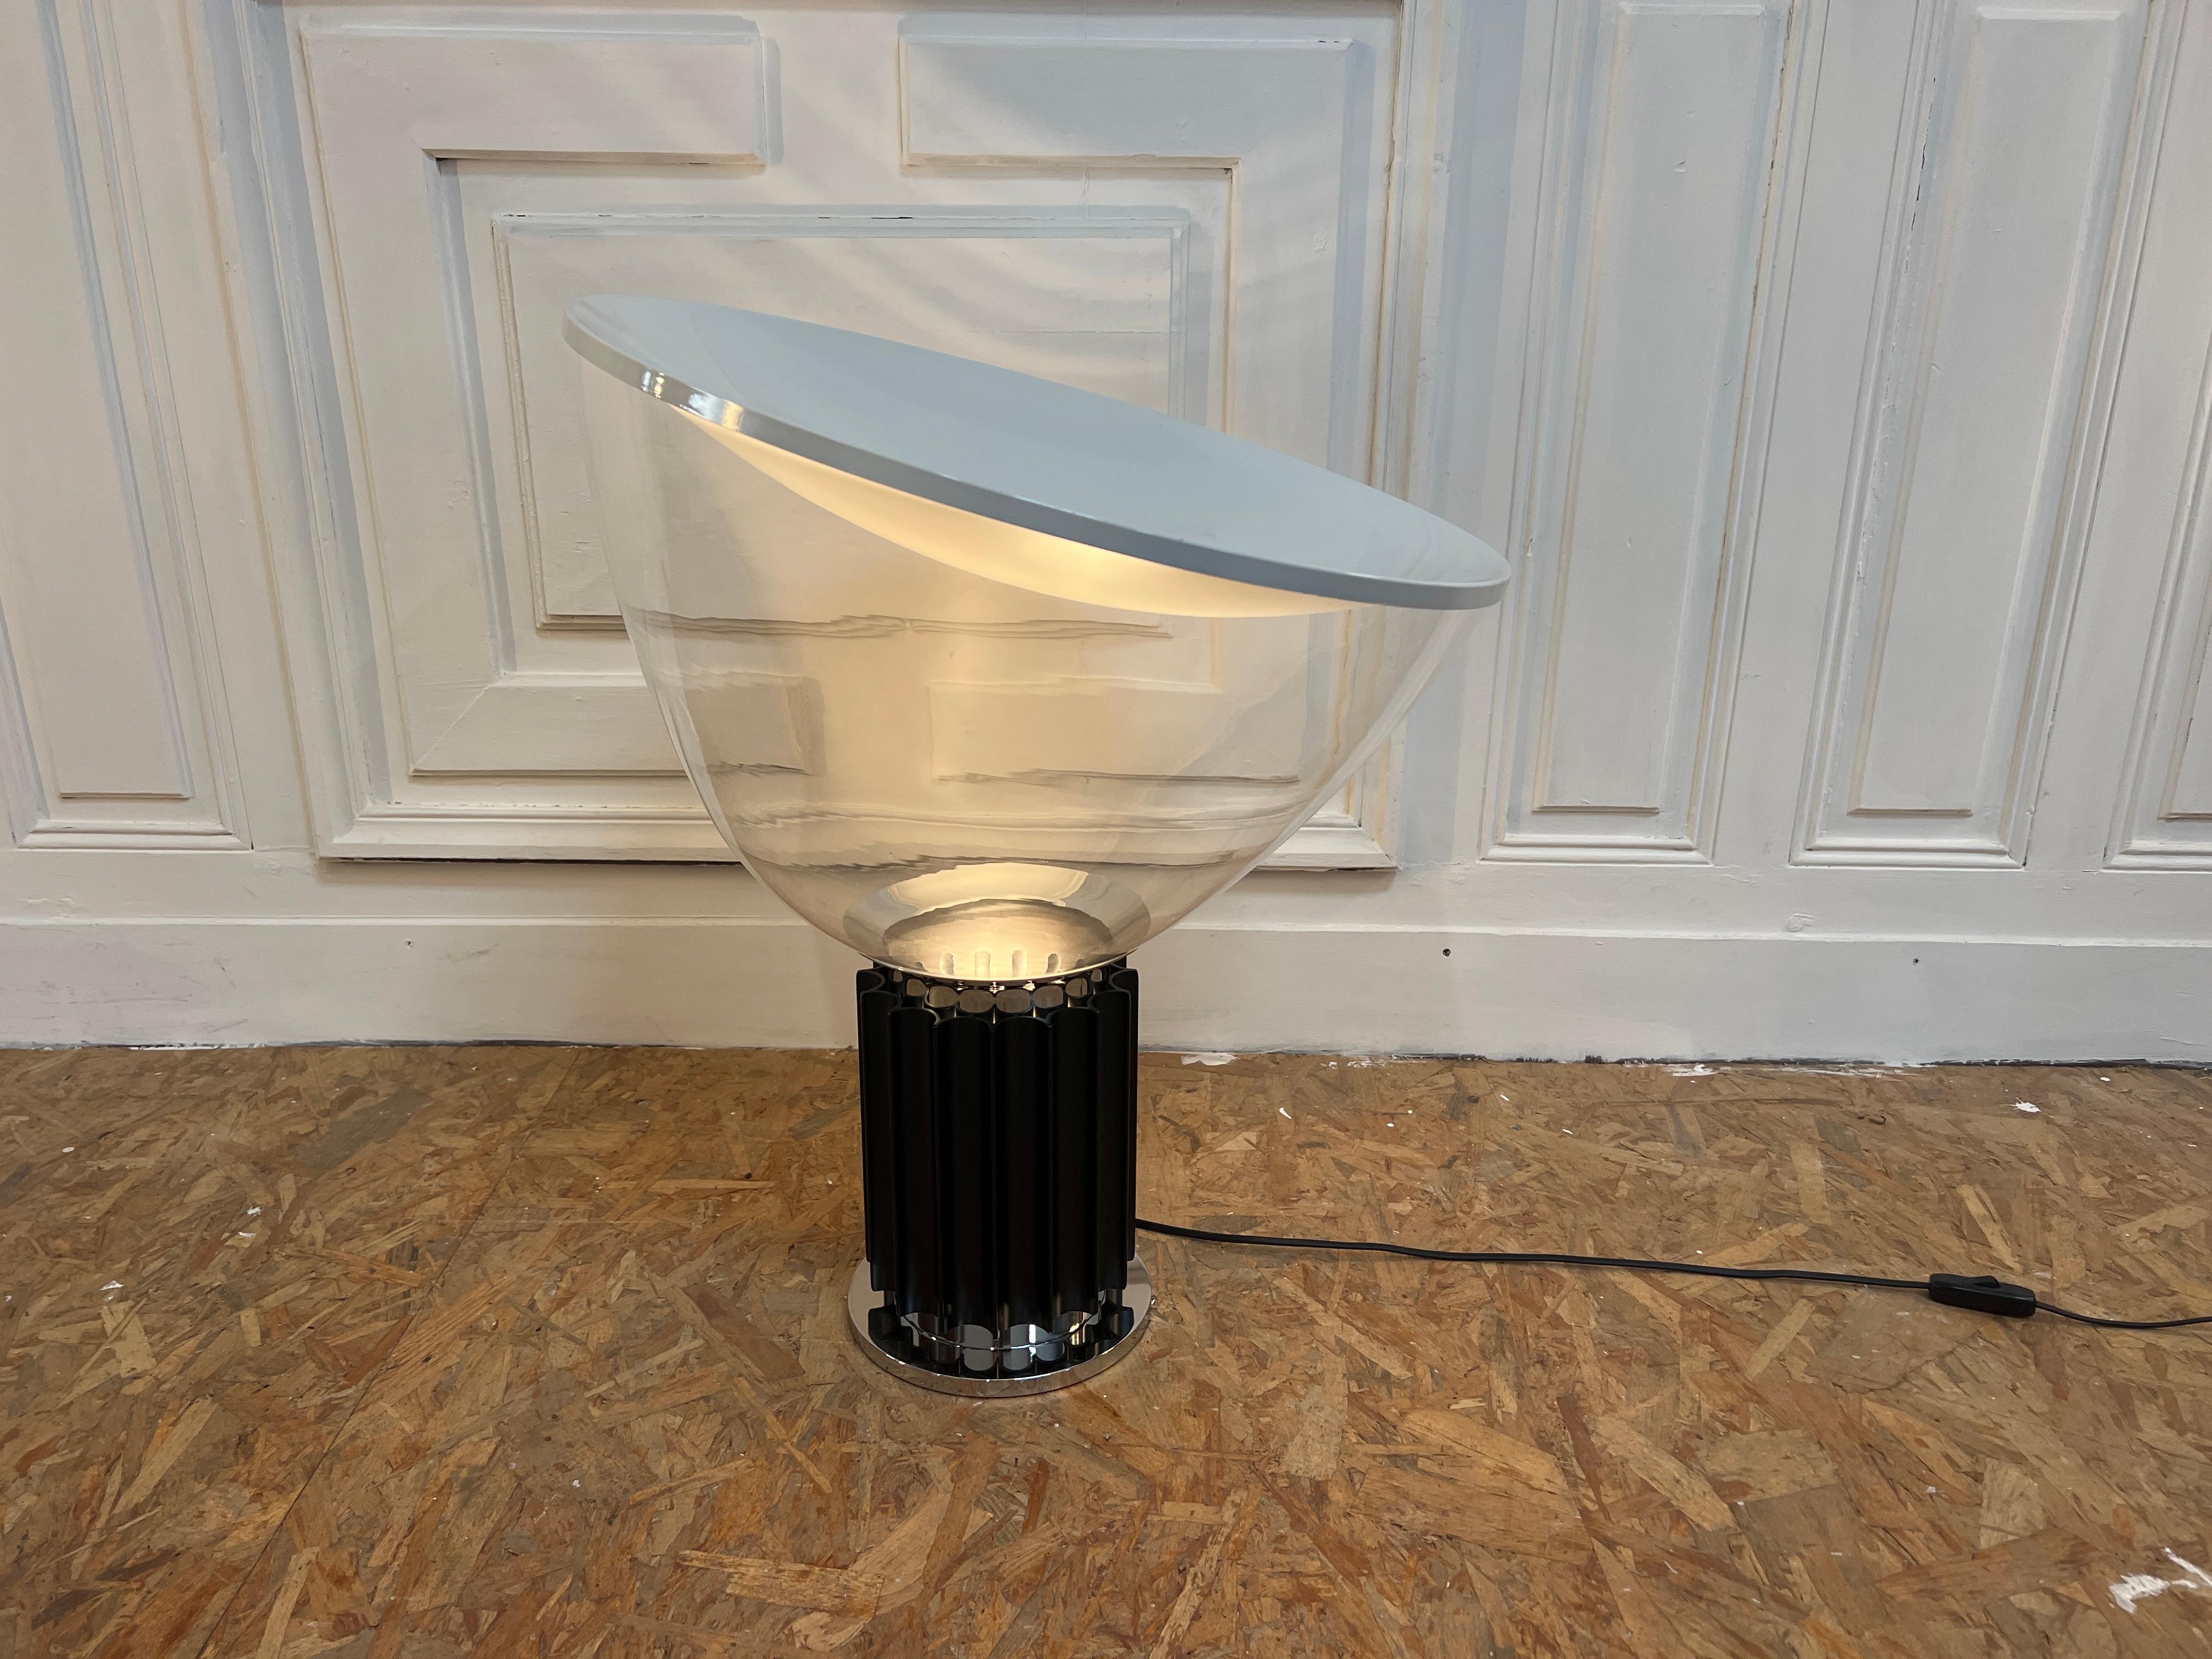 Merveilleuse table de lampe, modèle Taccia par Flos édition 1990 
Avec un verre de Murano en 50 cm (diamètre)

La lampe Taccia a été conçue par les designers italiens Achille et Pier Giacomo Castiglioni en 1962. Il combine des matériaux très